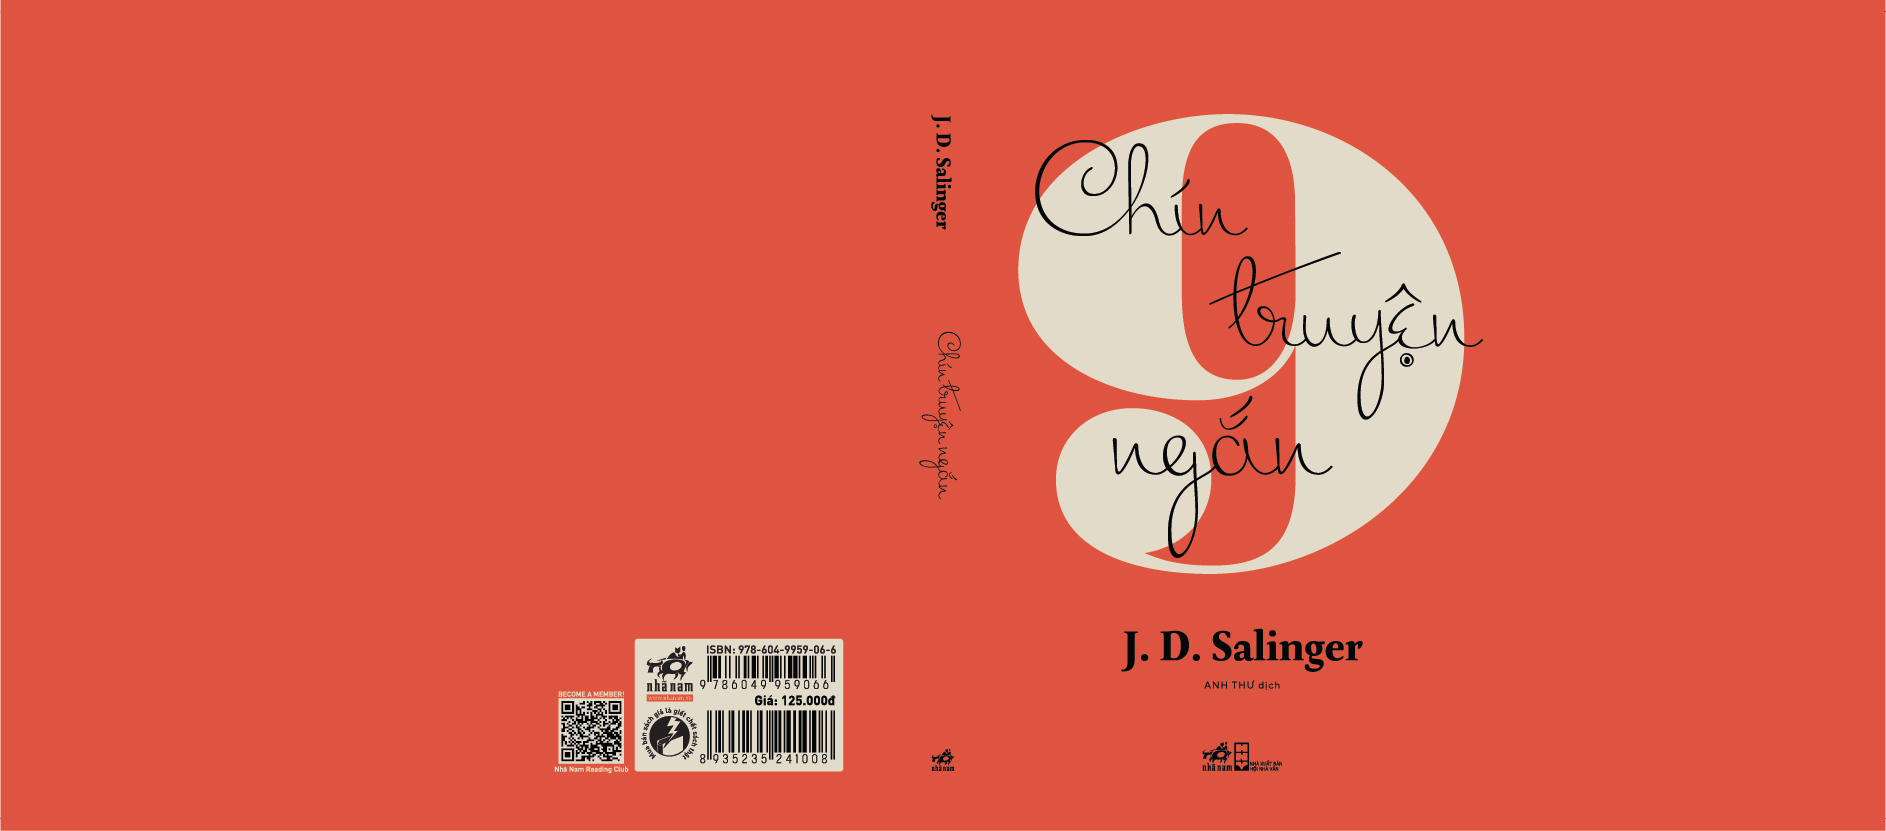 Sách - Chín chuyện ngắn (J. D. Salinger) (Nhã Nam Official)